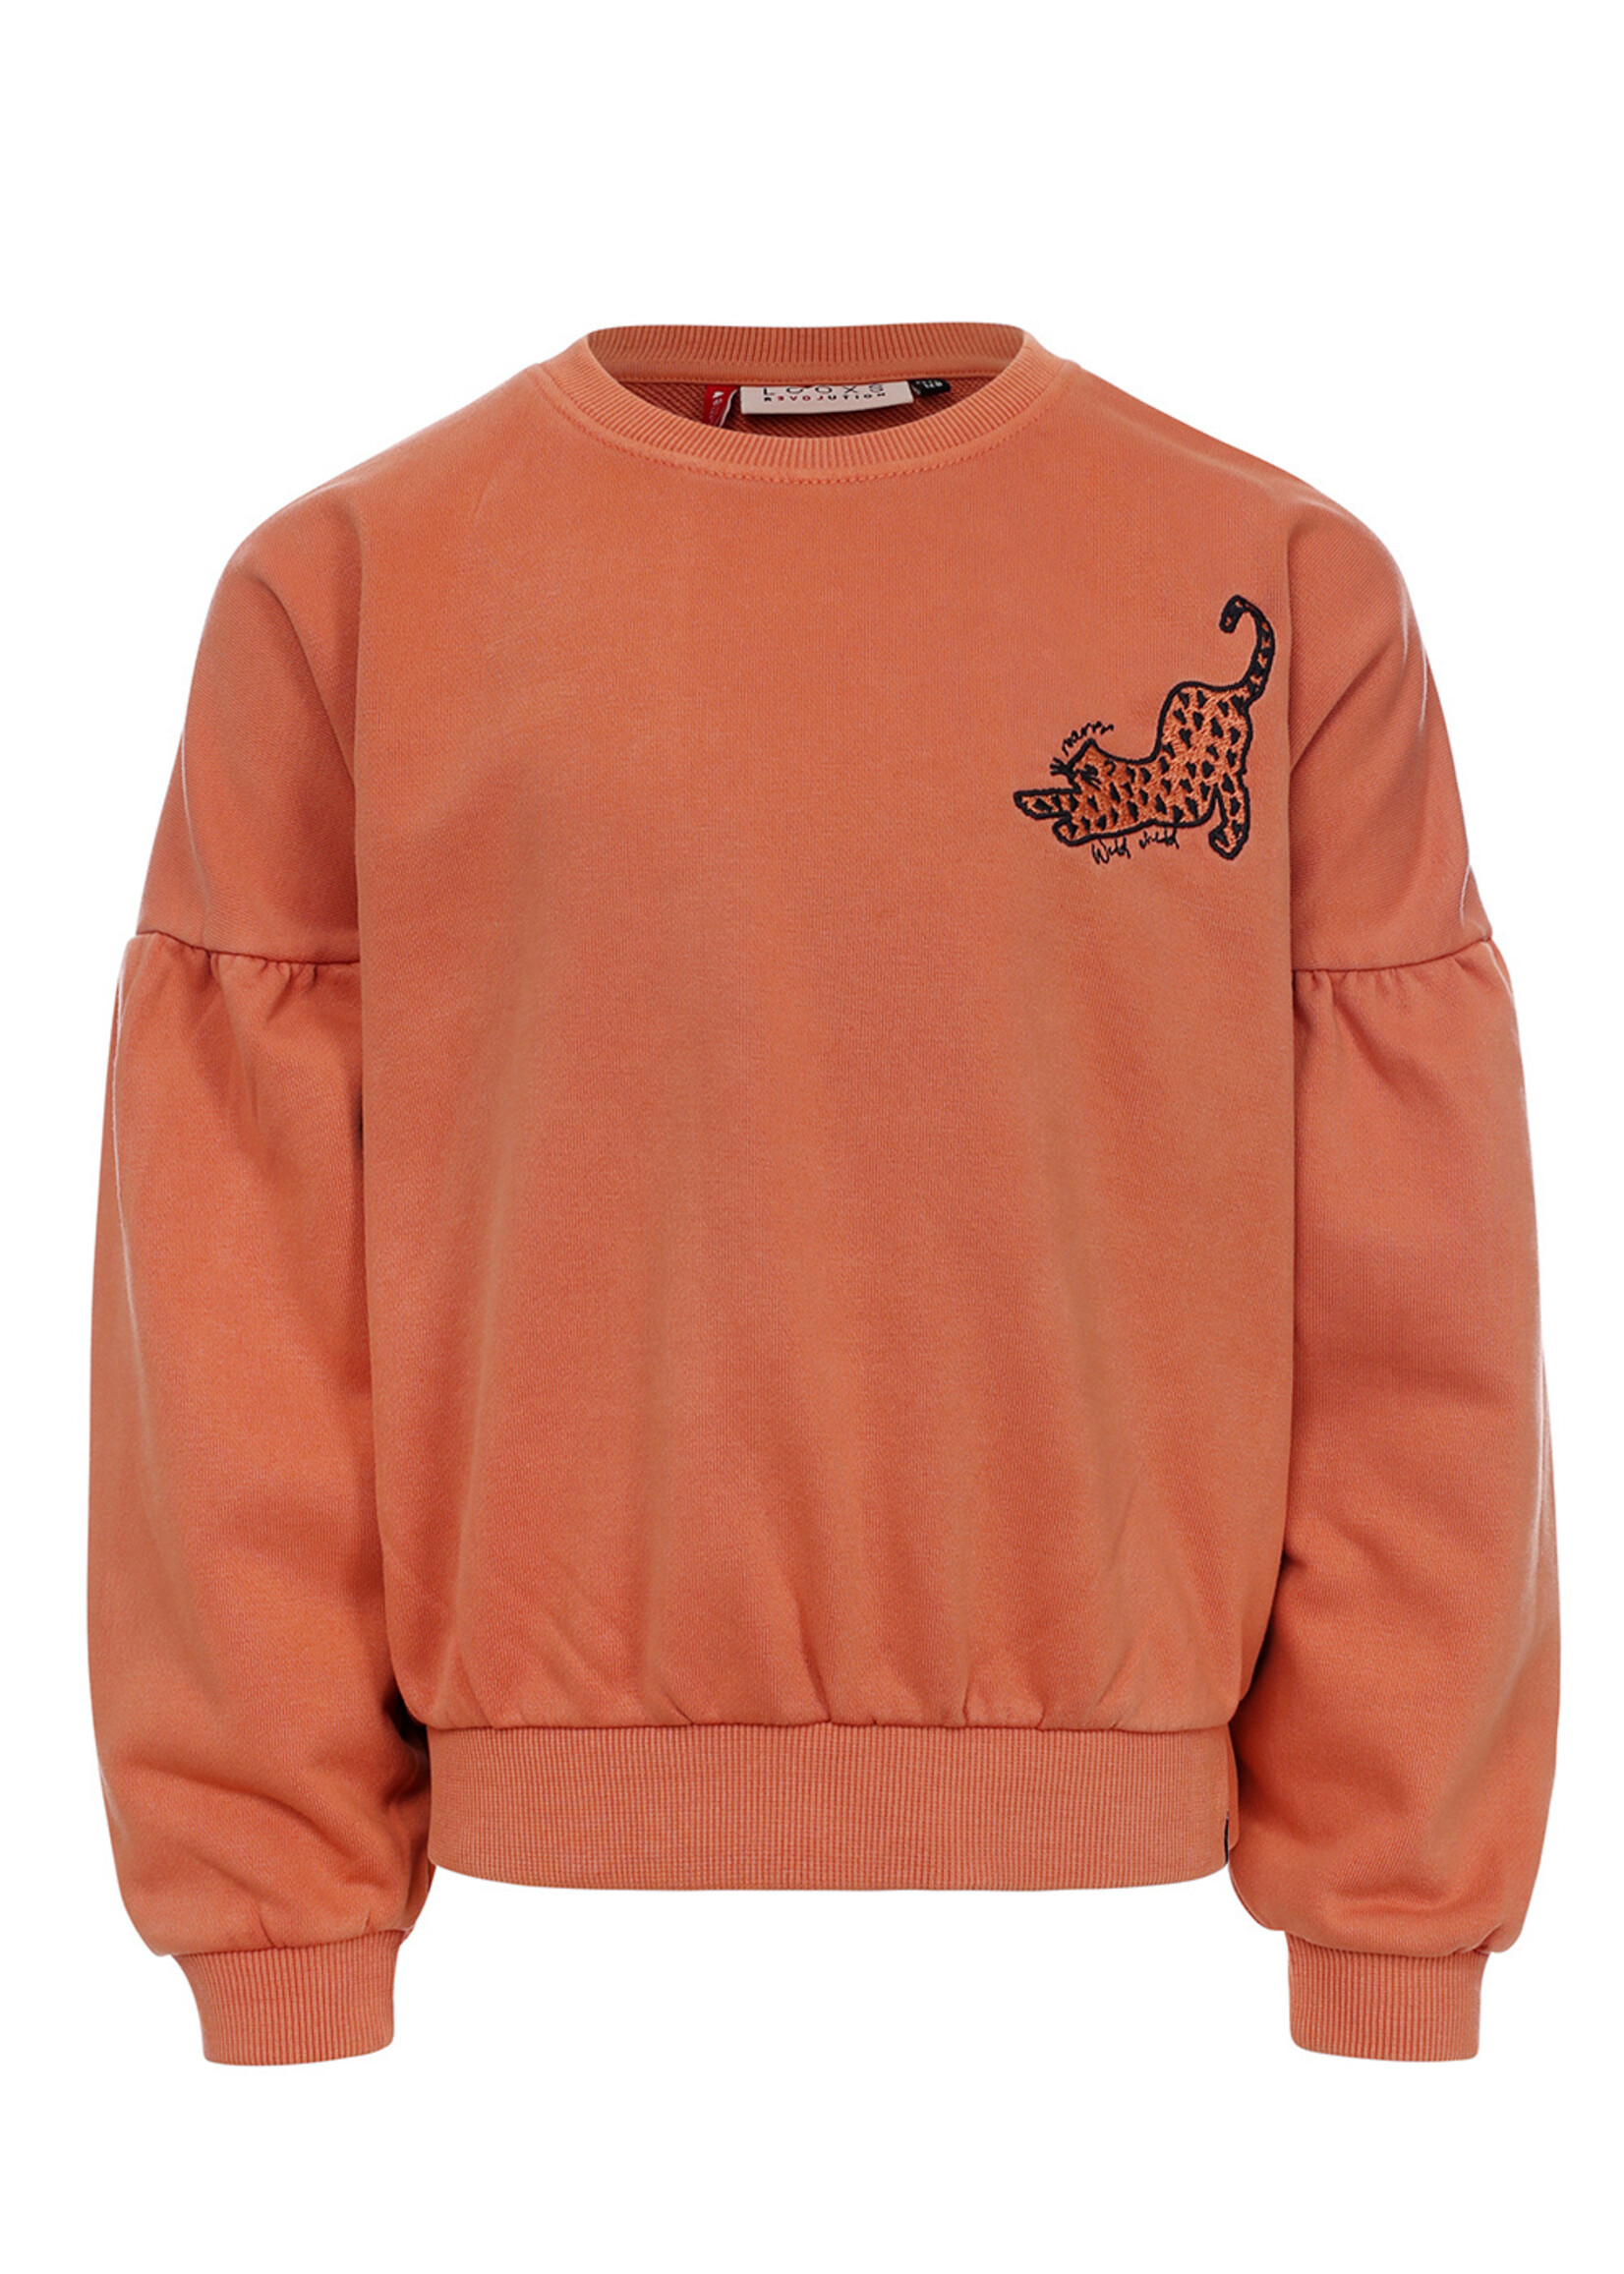 LOOXS Little Little sweater, Warm Orange